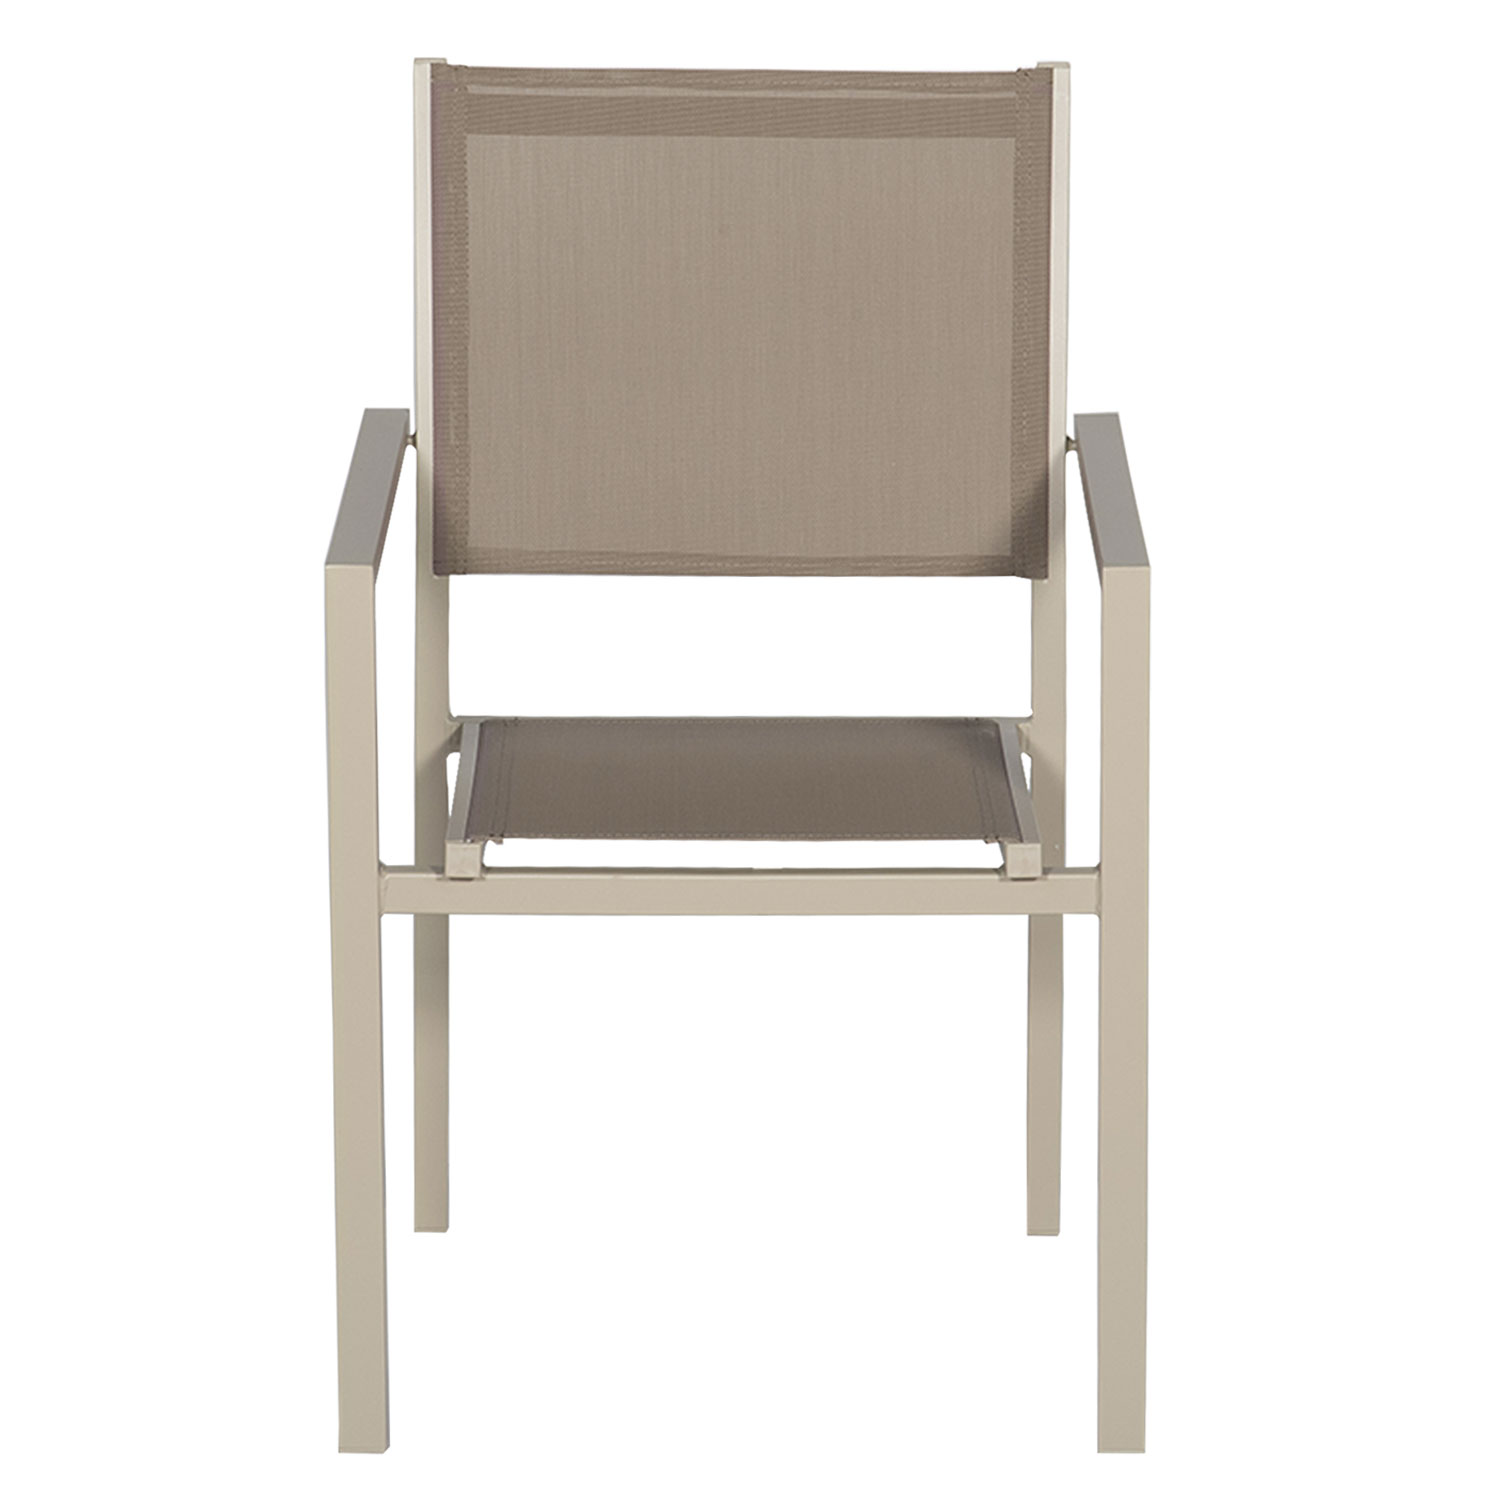 Juego de 8 sillas de aluminio color topo - textileno topo